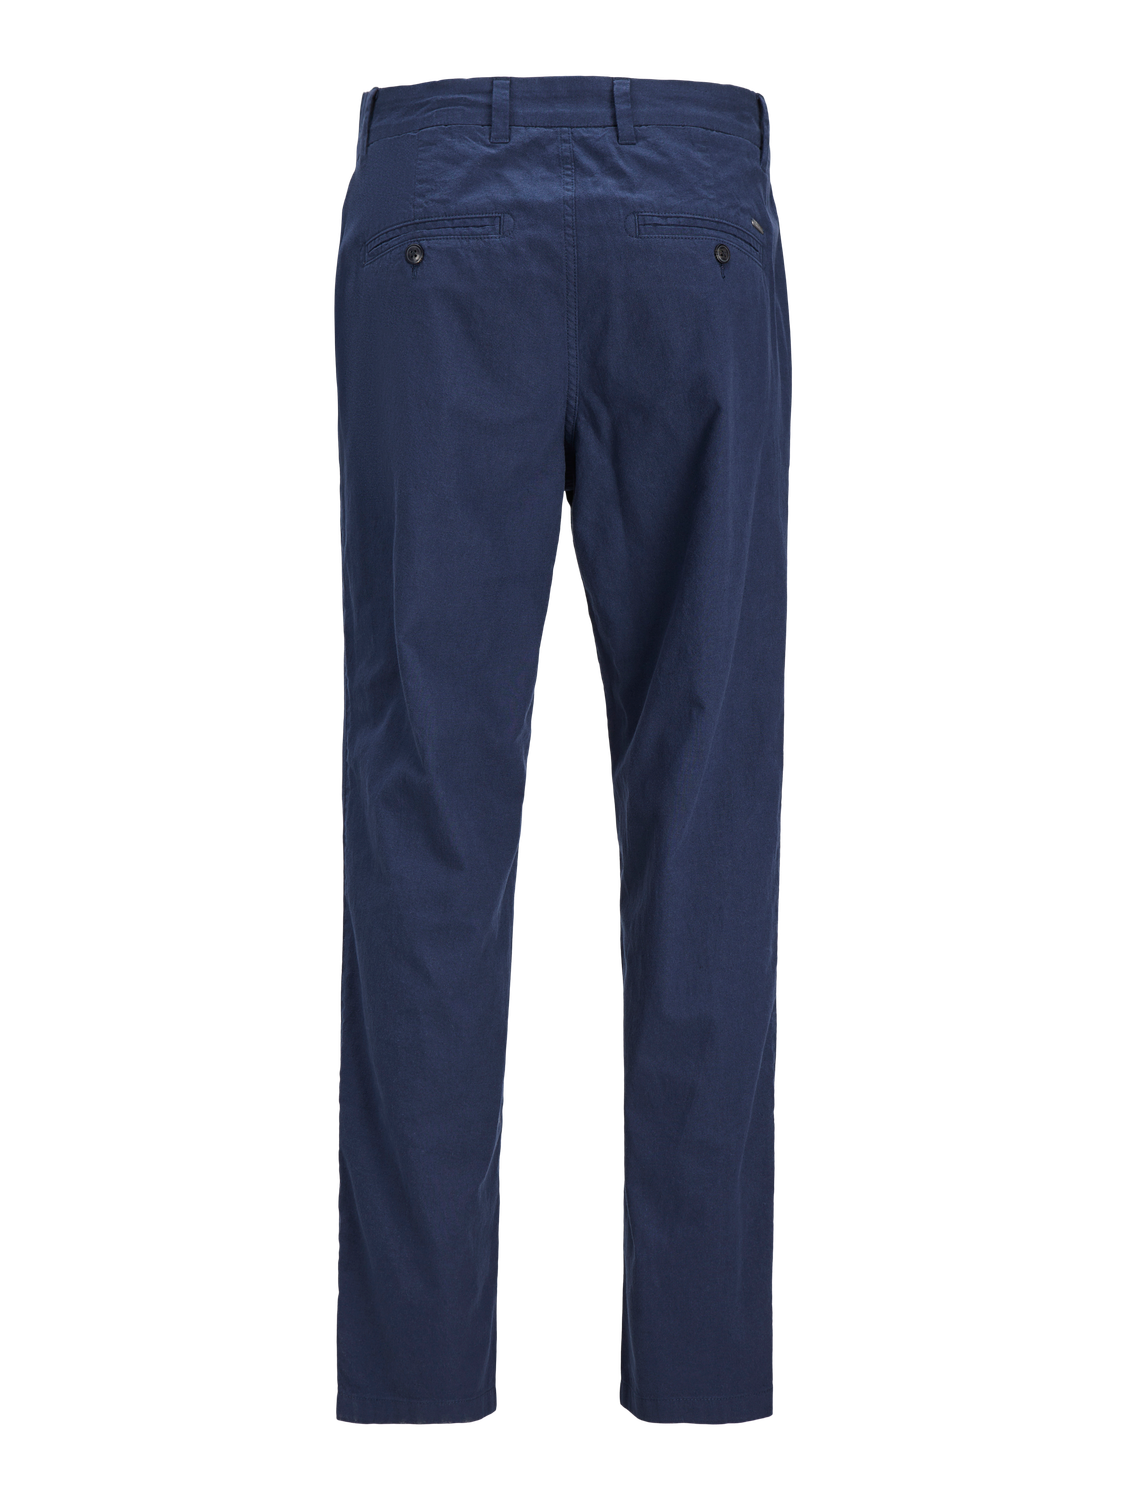 JPSTACE Pants - Navy Blazer